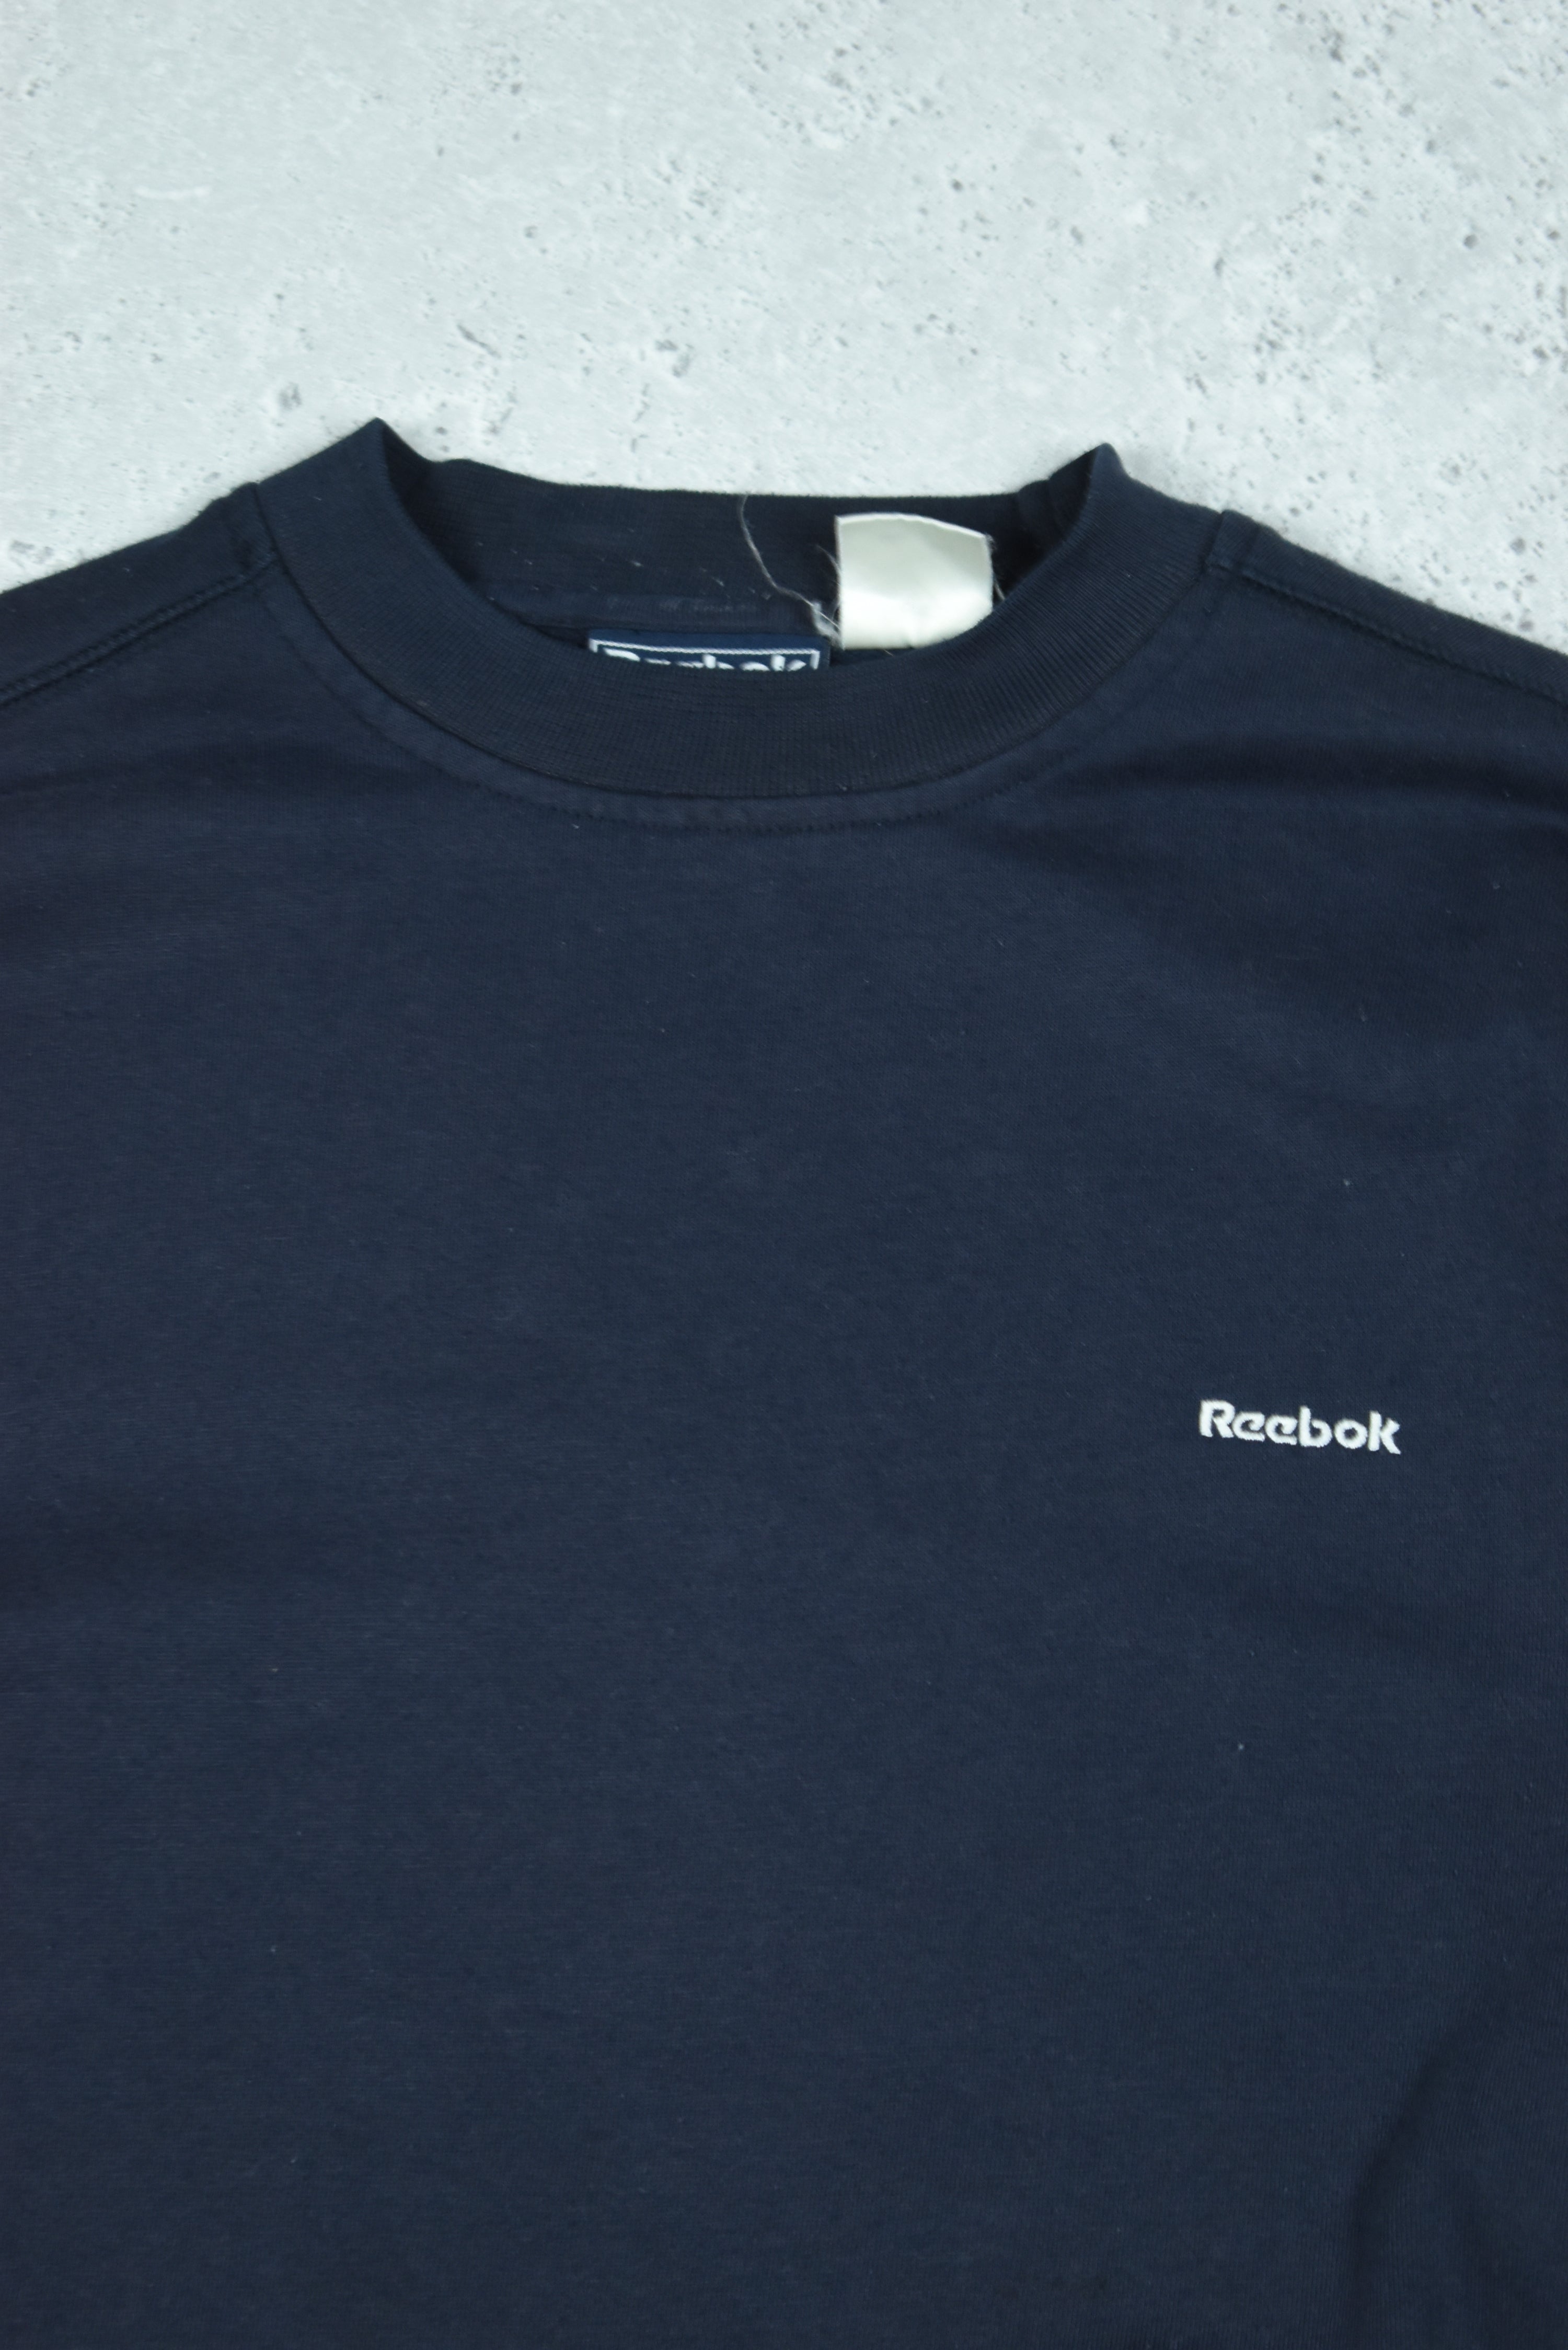 Vintage Reebok Embroidered Logo Sweatshirt Medium